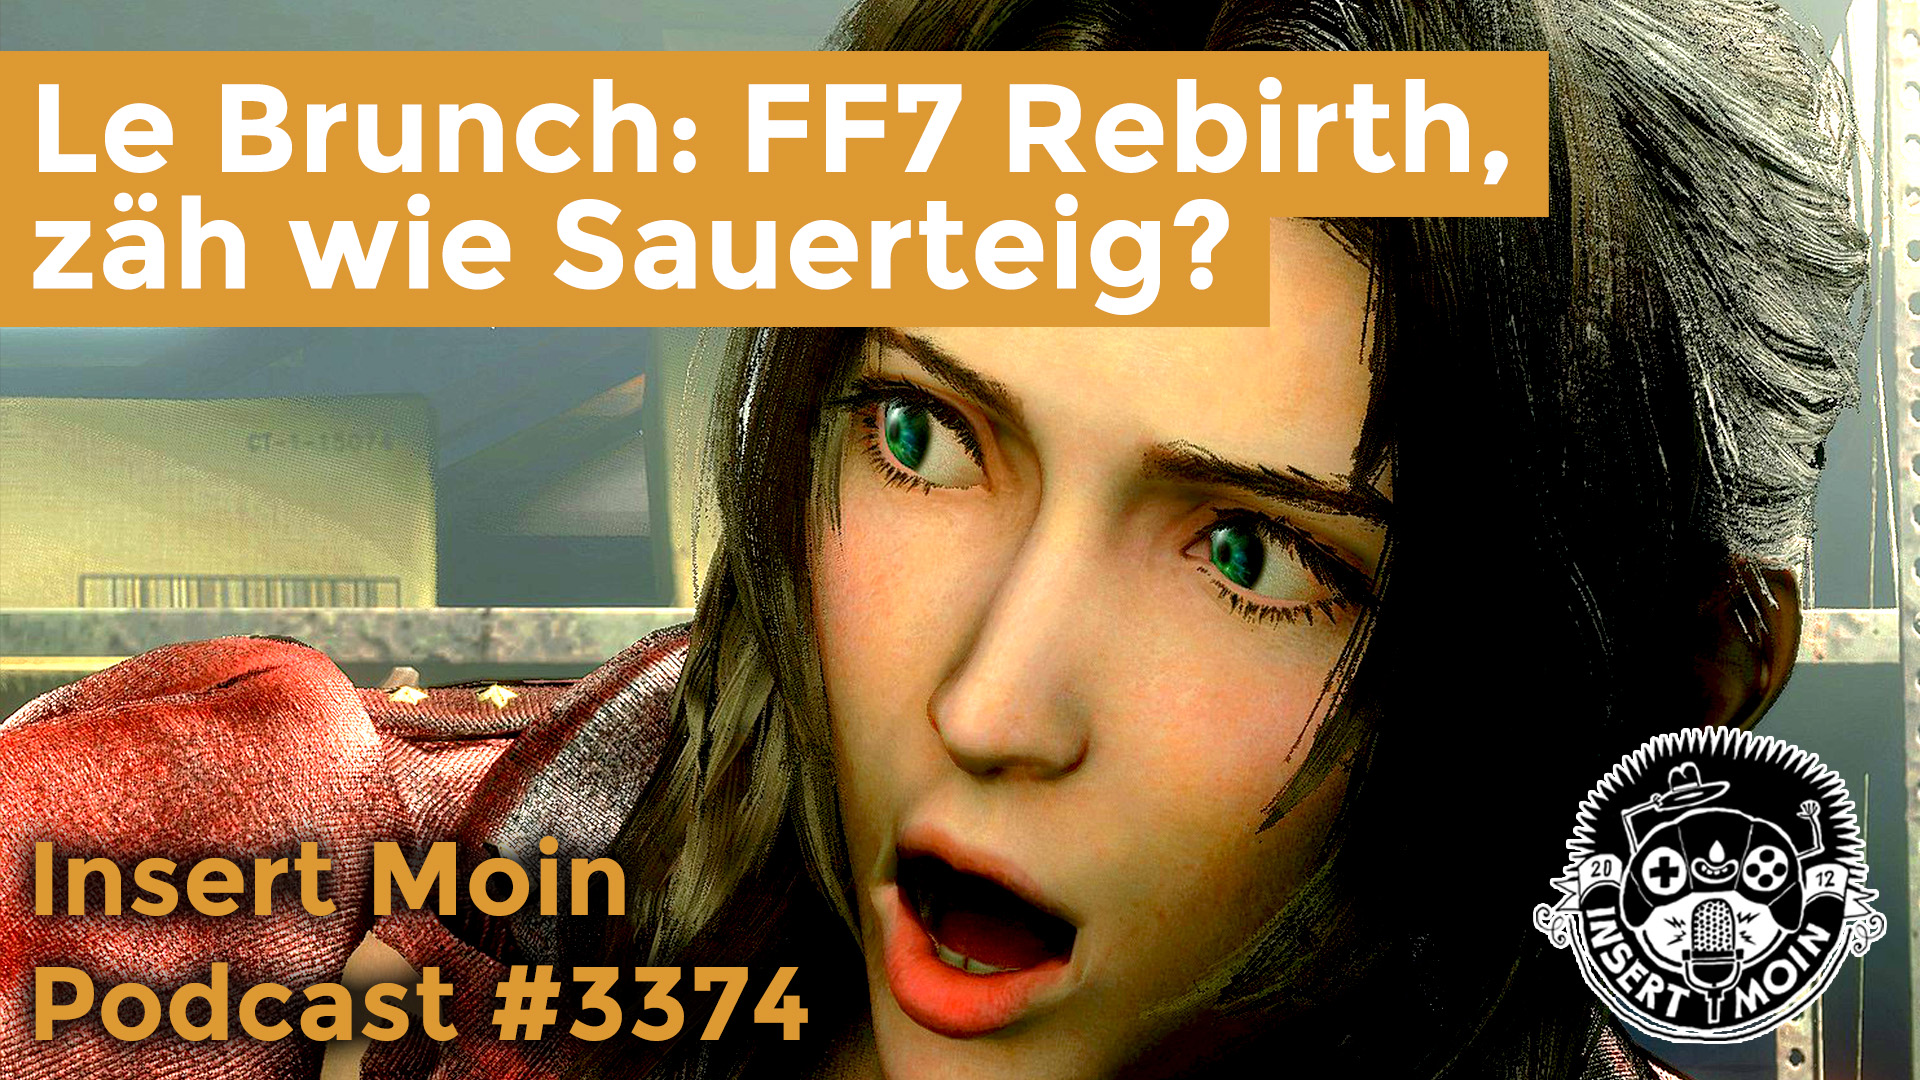 Le Brunch: FF7 Rebirth, zäh wie Sauerteig?